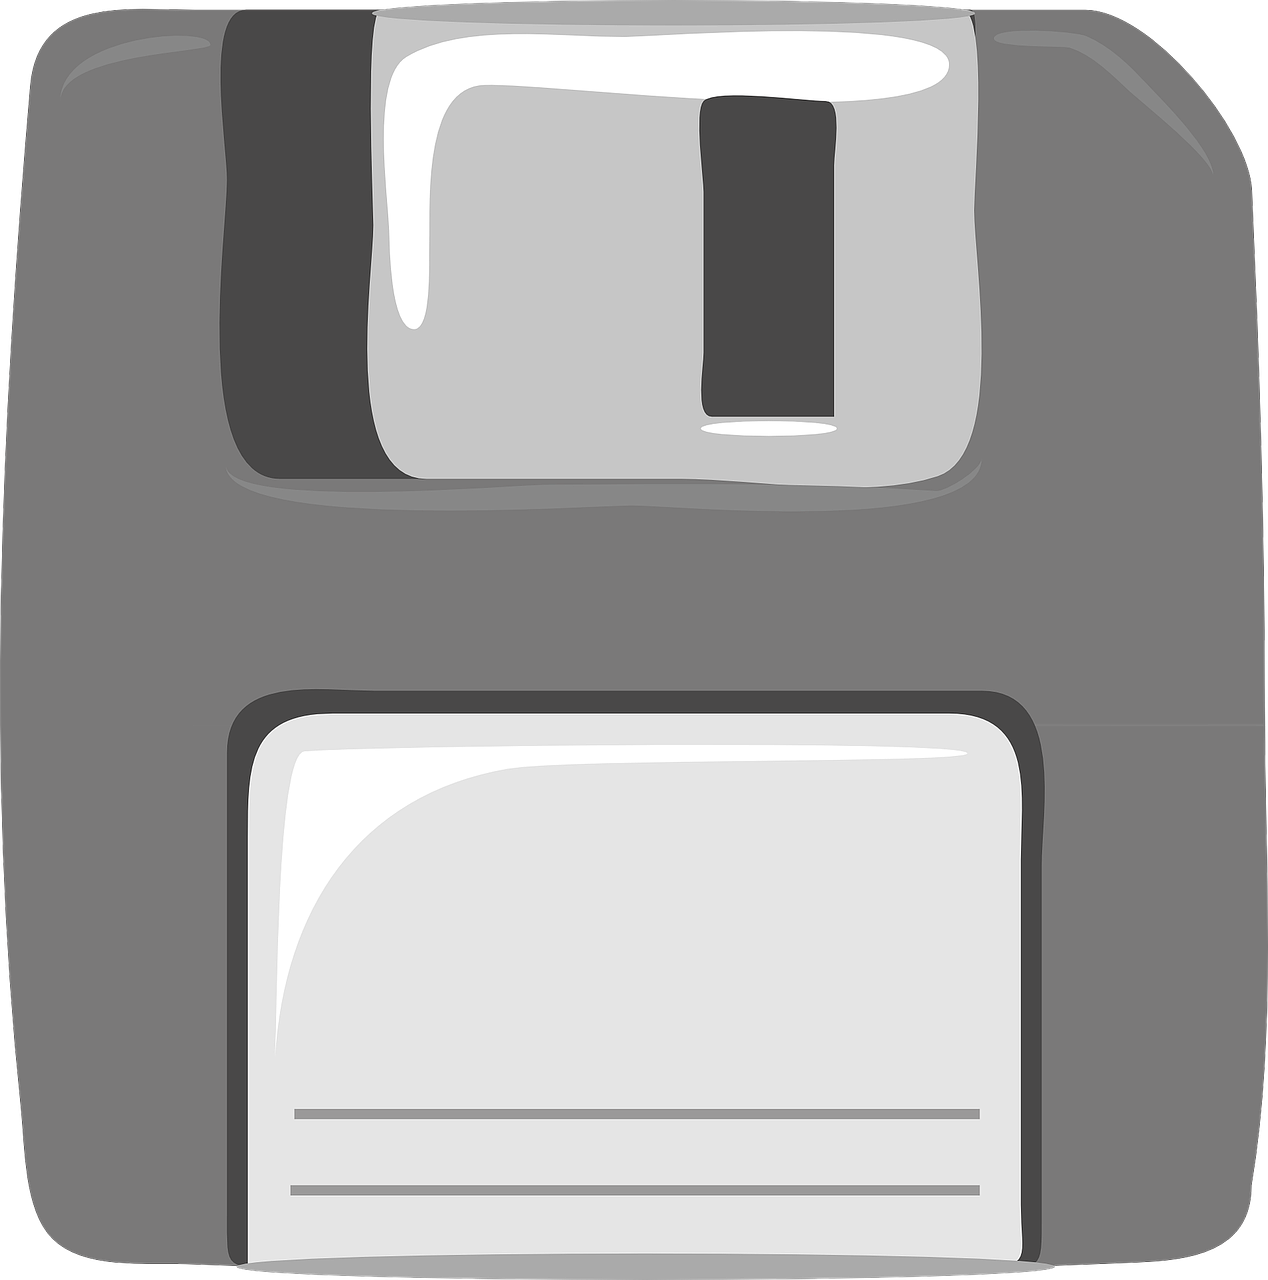 Floppy, Diskas, Sutaupyti, Duomenų Saugykla, Techninė Įranga, Diskas, Diskelis, Magnetinis Duomenų Saugojimas, Piktograma, Formatuotas